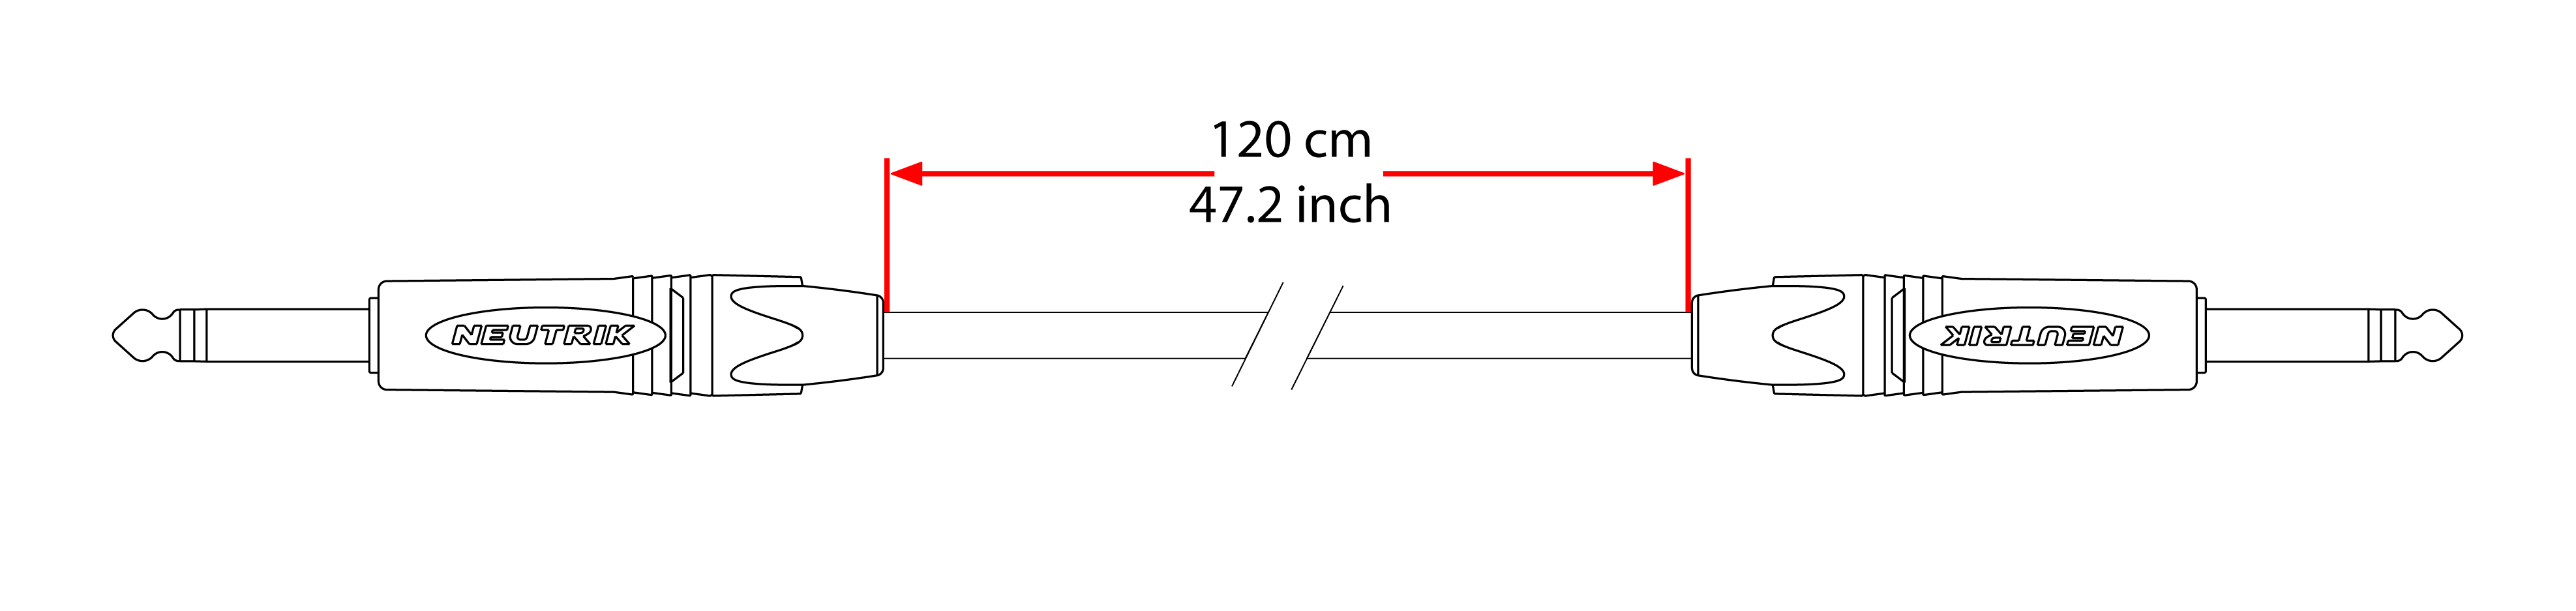 Cable de patch 120cm